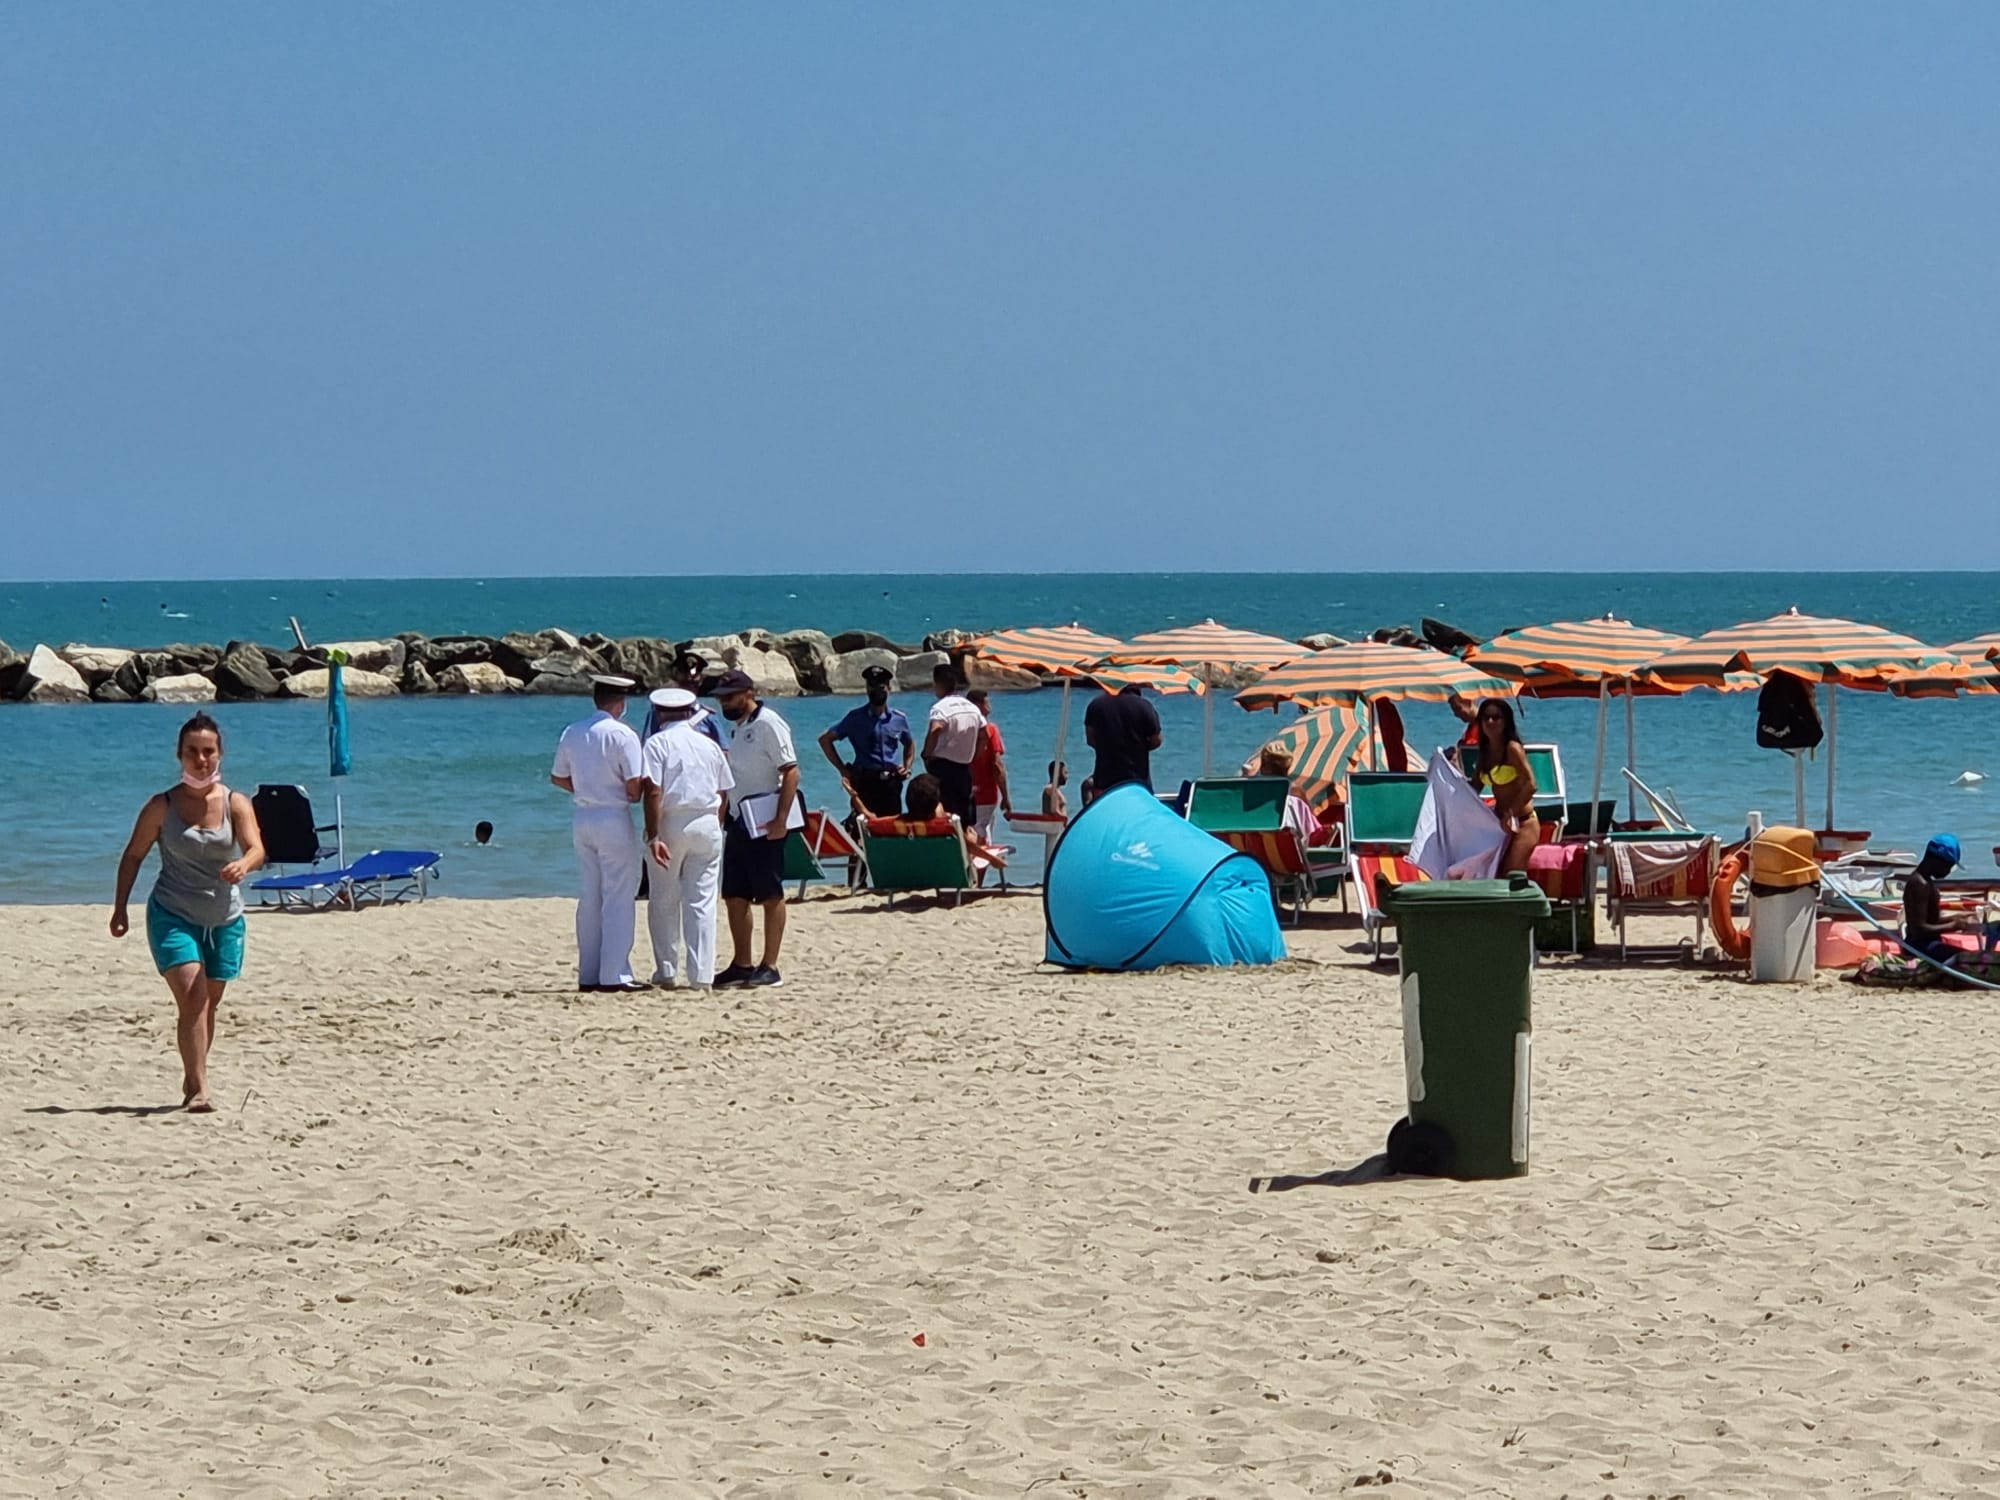 San Benedetto – Doppio dramma in spiaggia, due stranieri morti in acqua